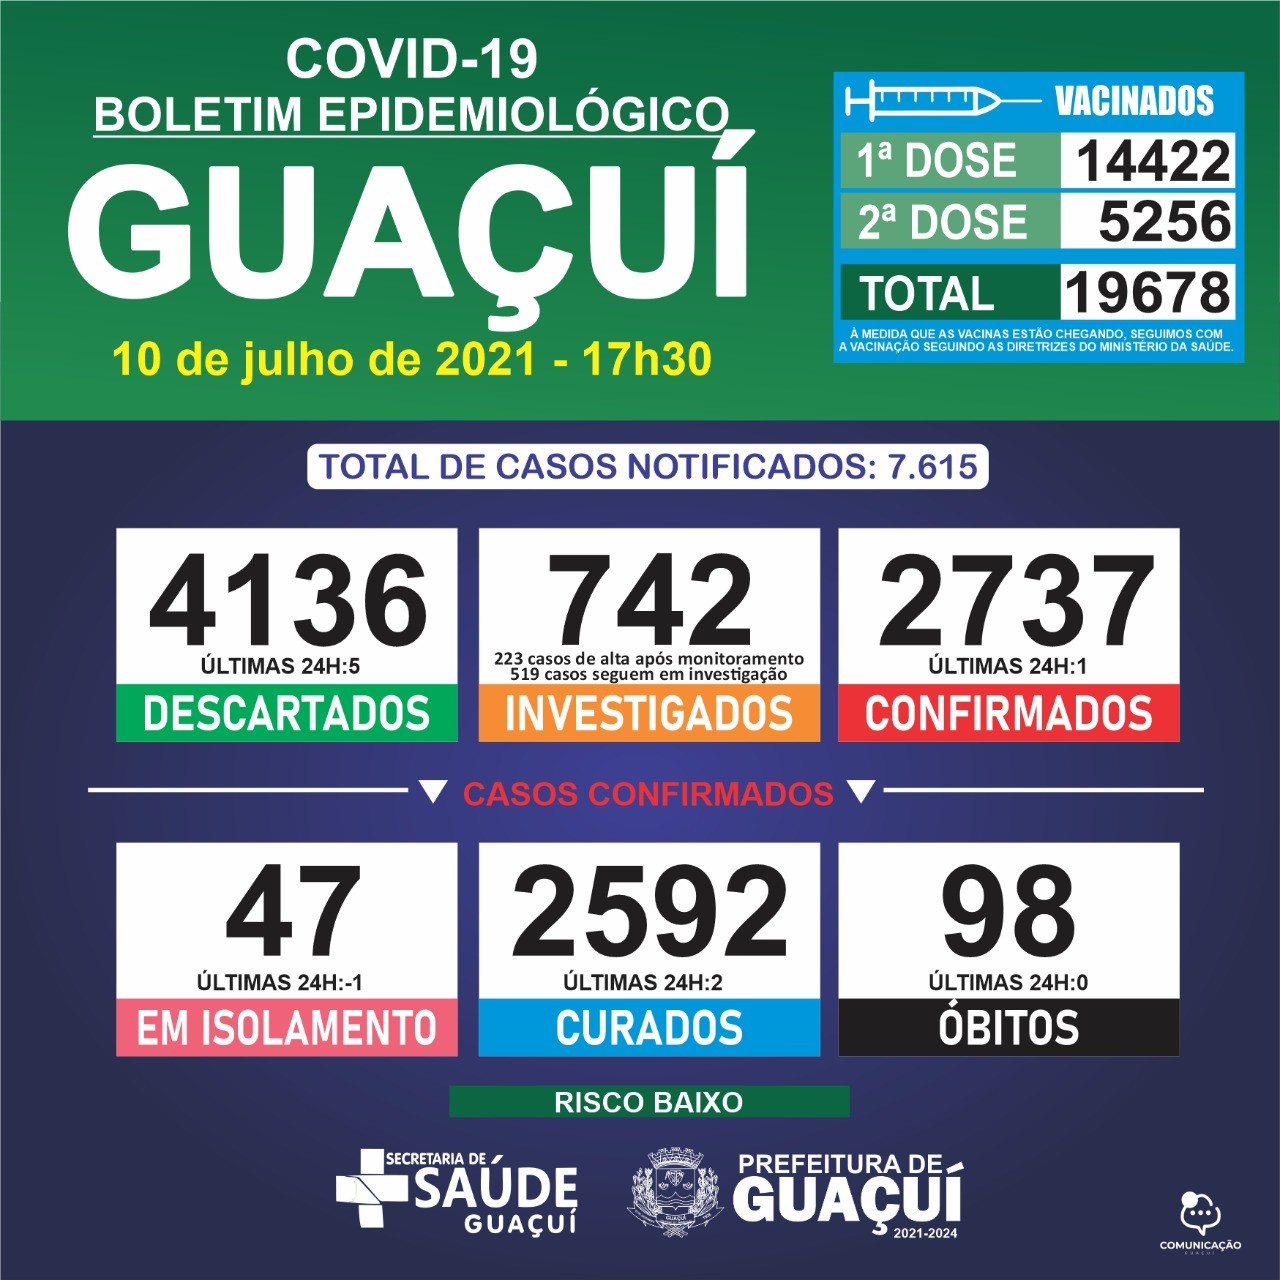 Boletim Epidemiológico 10/07/21: Guaçuí registra 1 caso confirmado e 2 curados nas últimas 24 horas